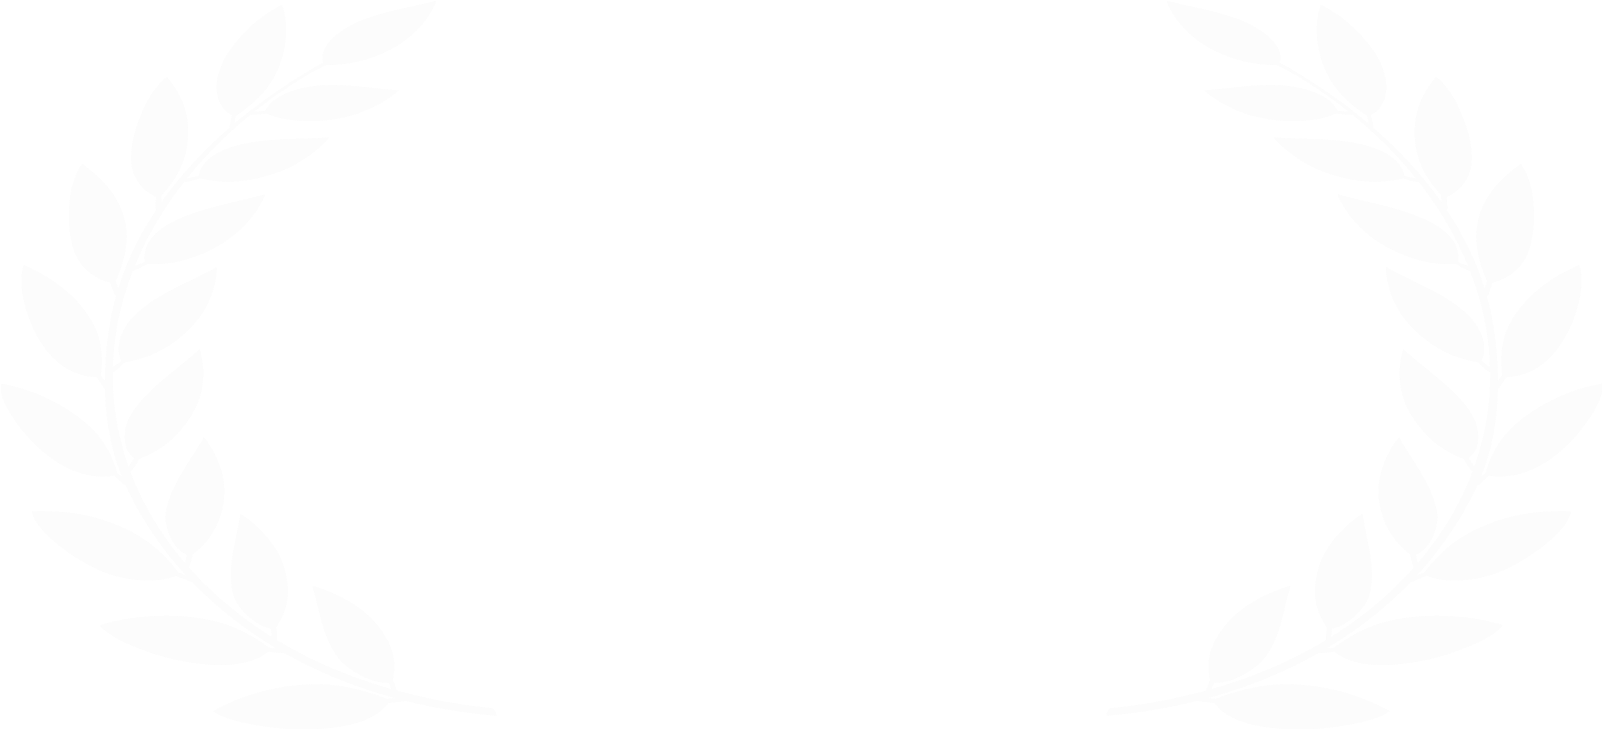 Nashville Film Festival2015 Official Selection Laurels